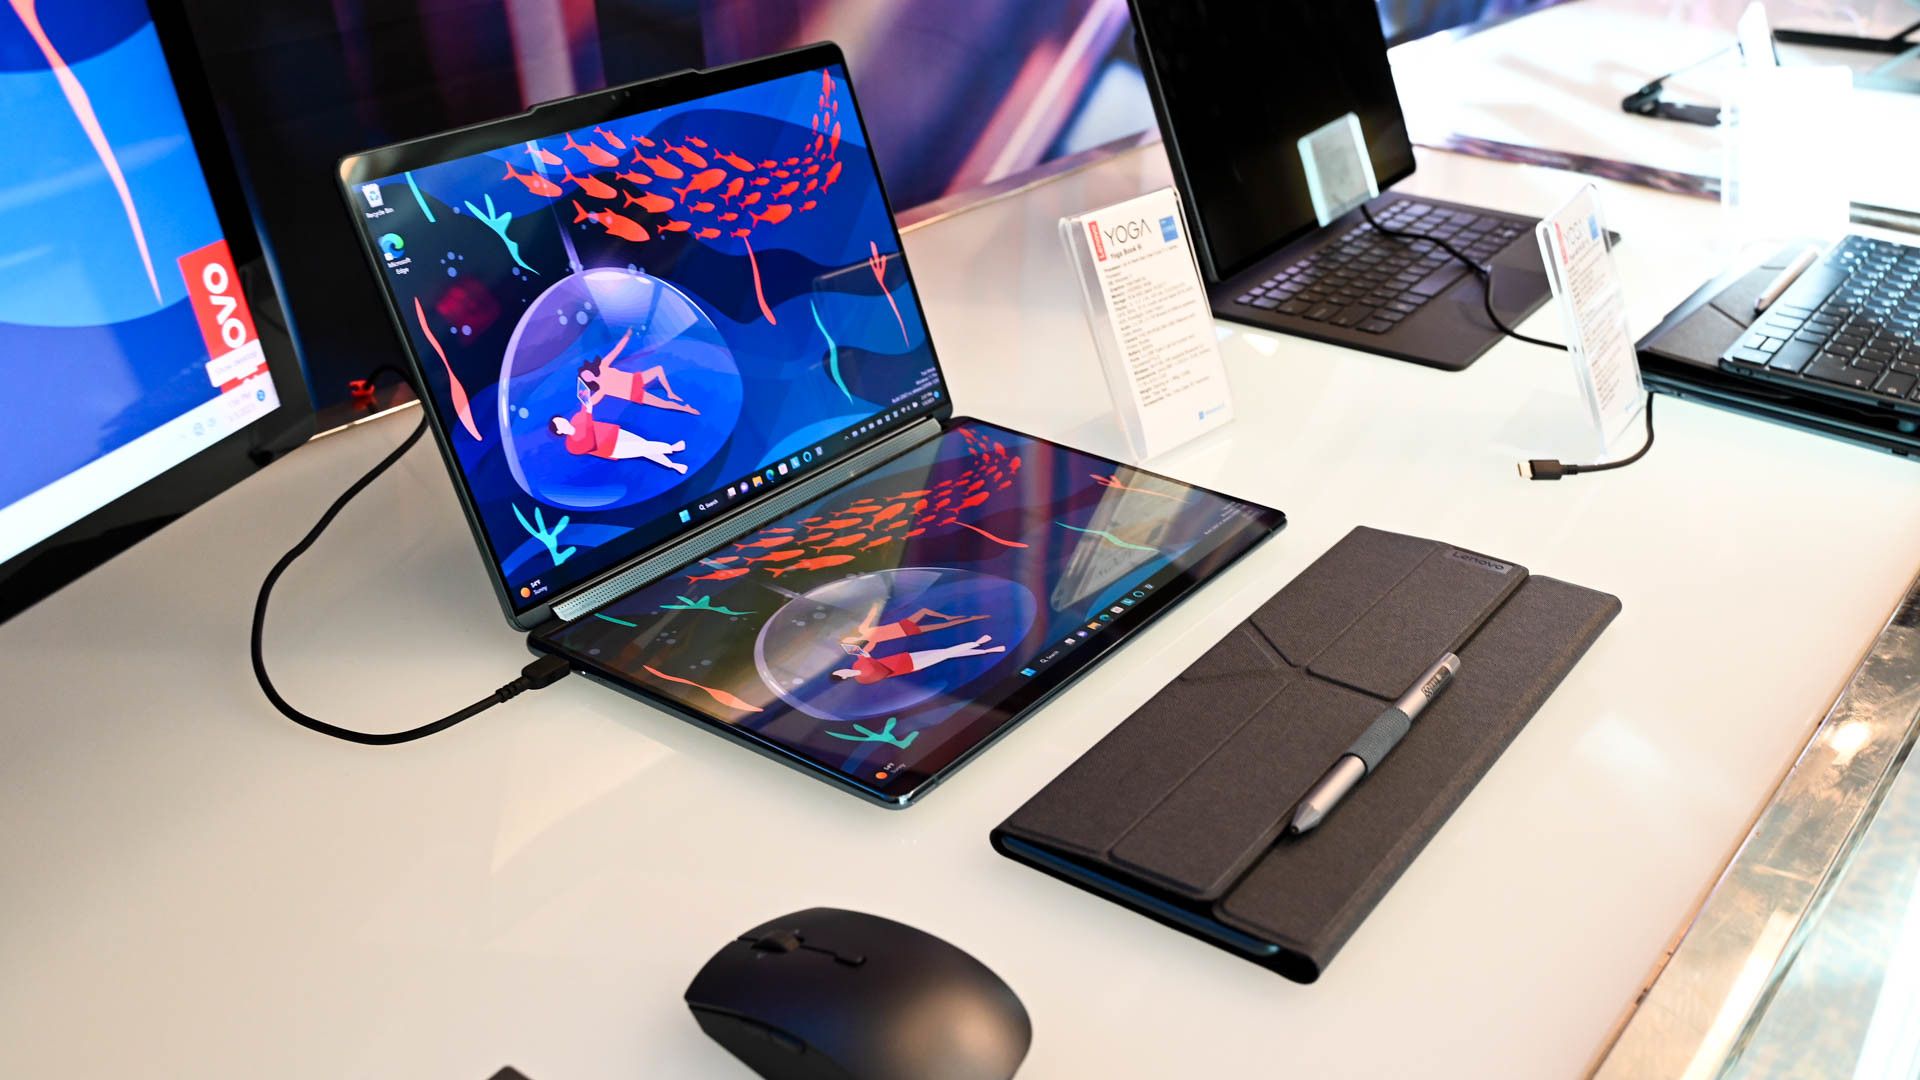 Lenovo Yoga 9i and stand on a desk.